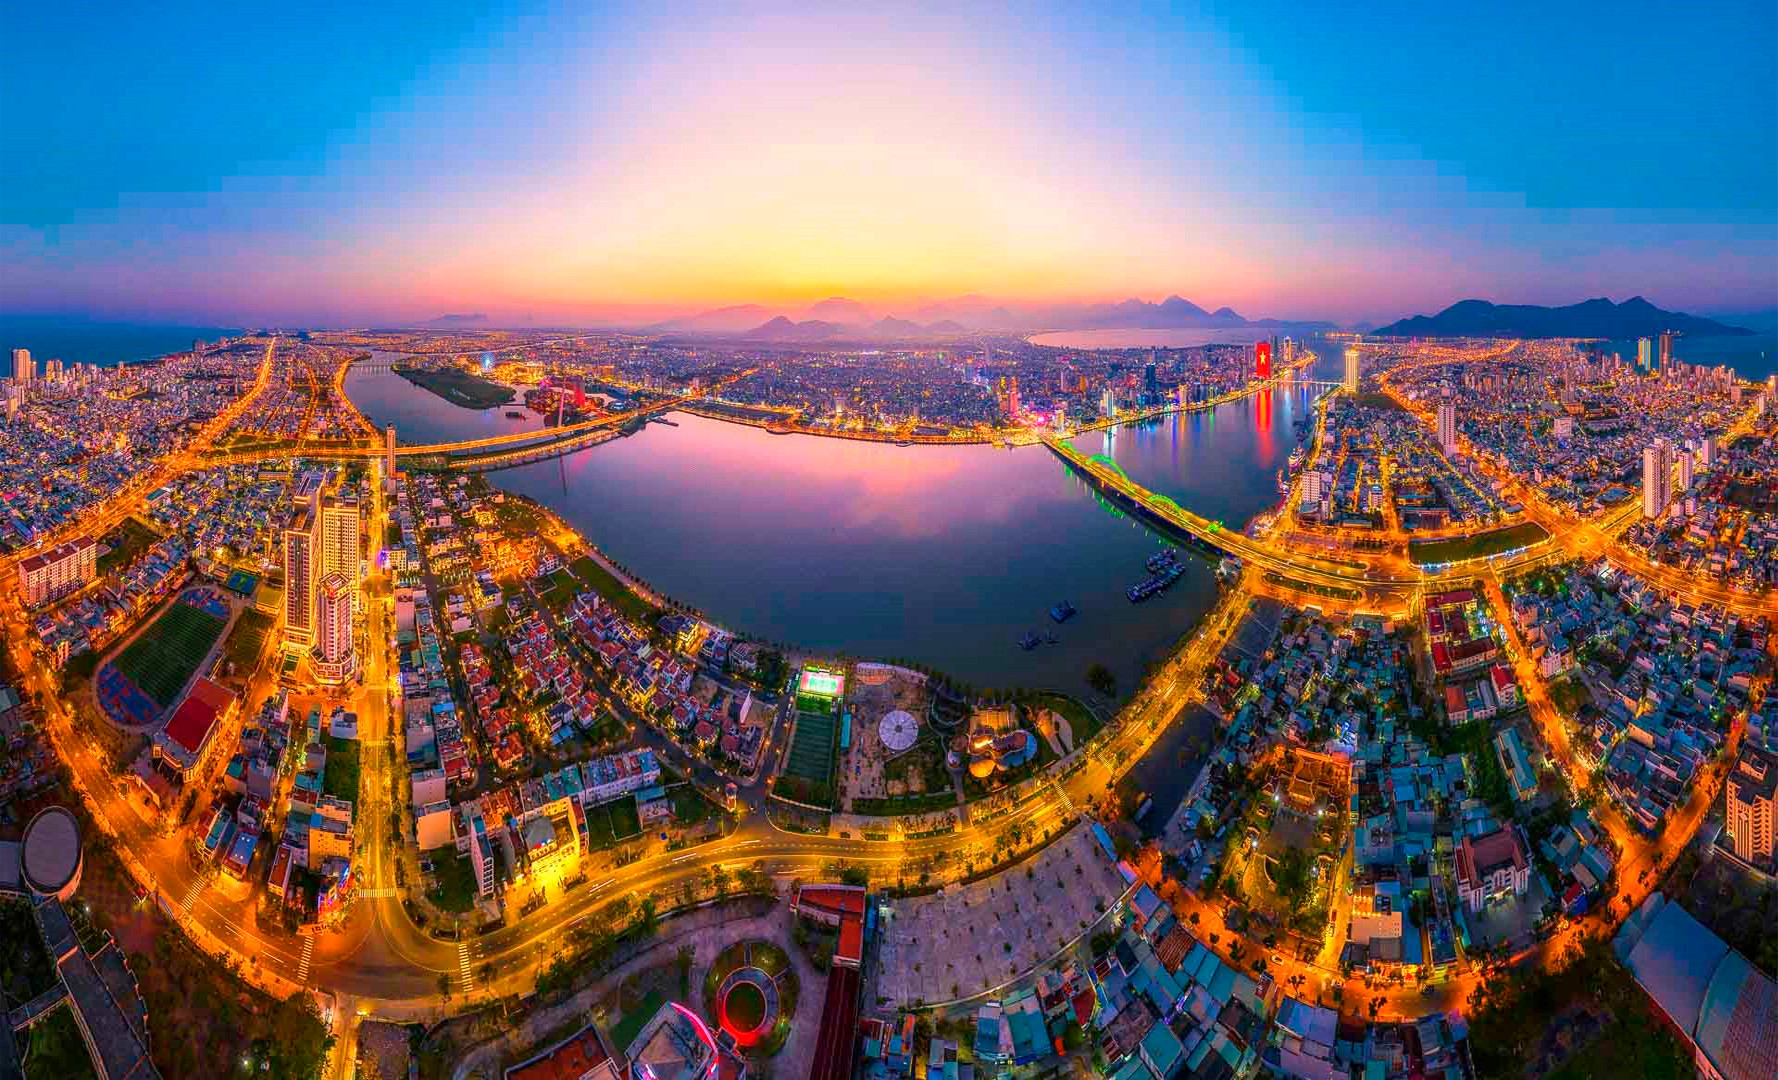 Thành phố là "đô thị đáng sống bậc nhất thế giới" của Việt Nam, có "tiên cảnh" trong phim bom tấn Mỹ, mỗi năm hút cả hàng triệu người đổ về - Viet Nam Smart City